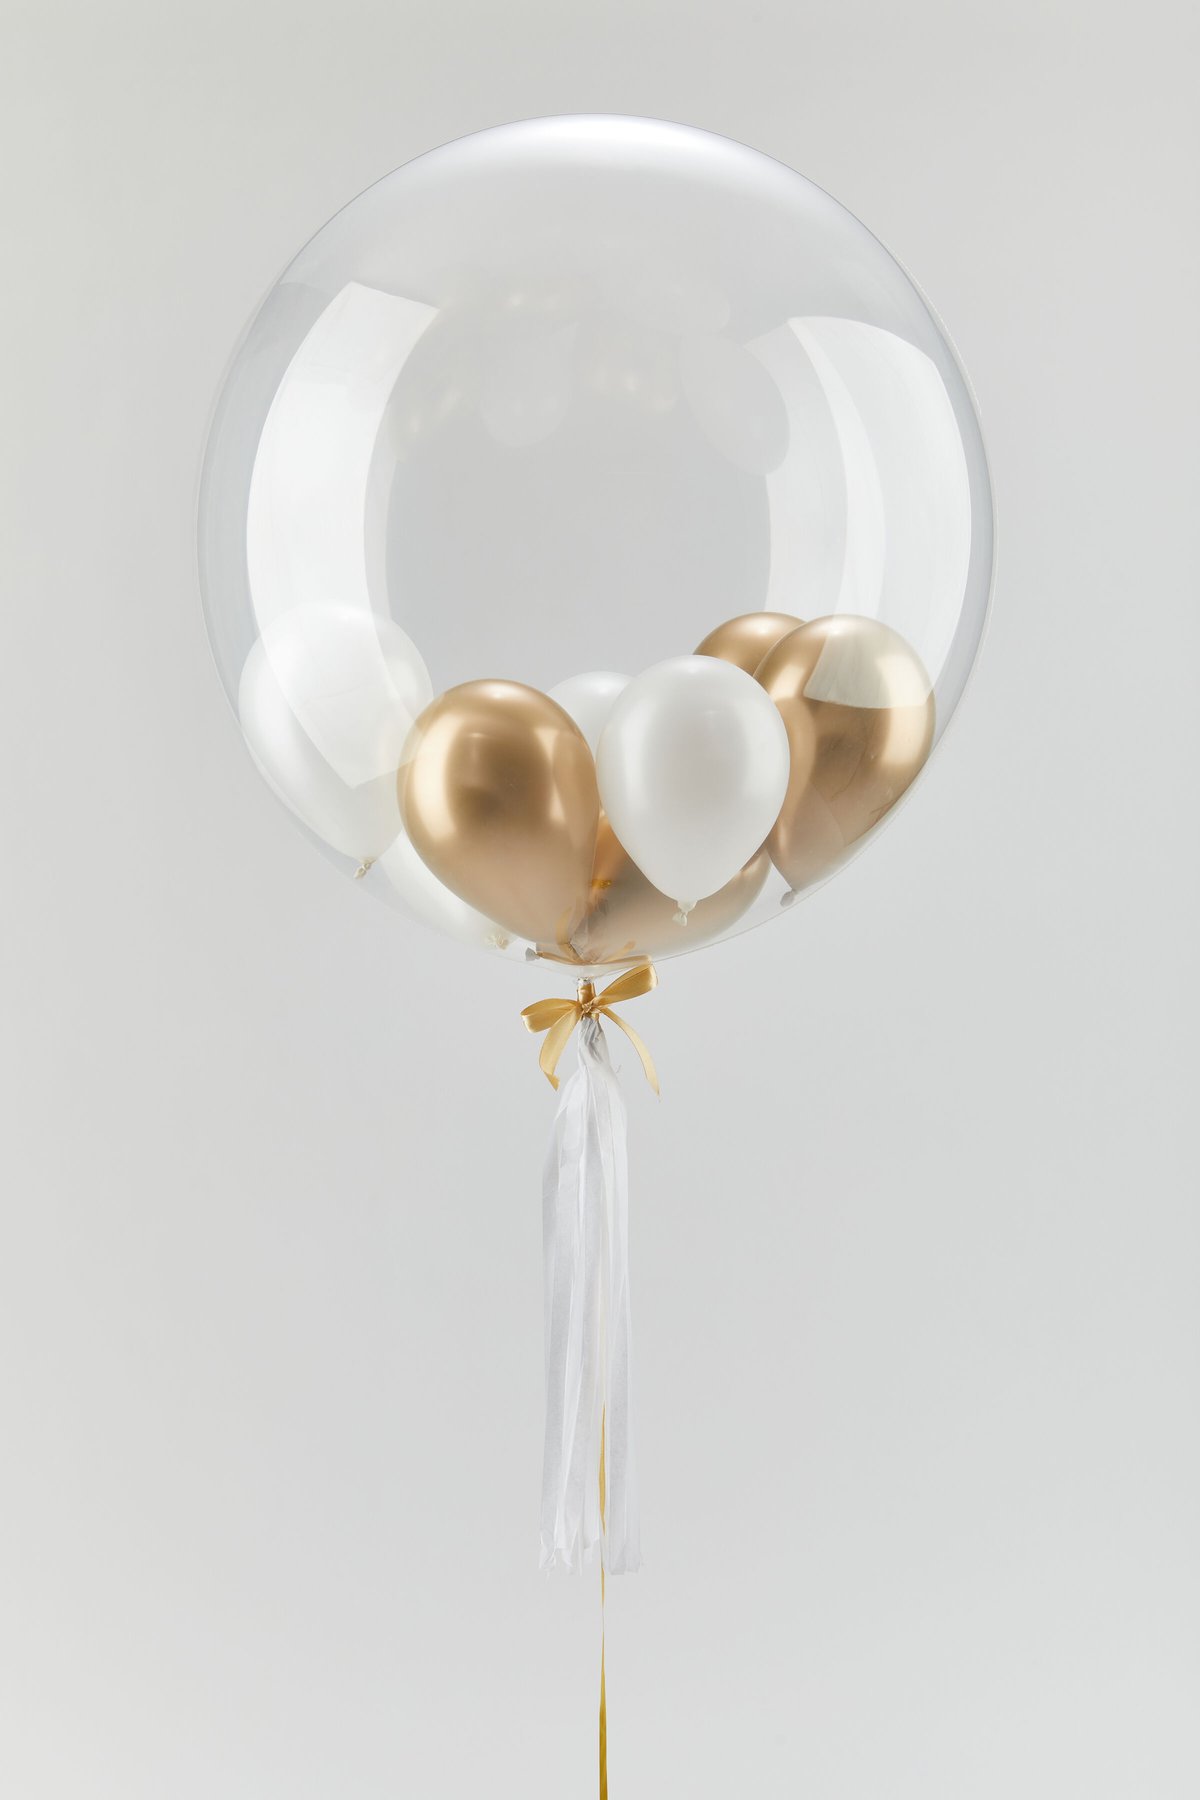 Golden Bubble